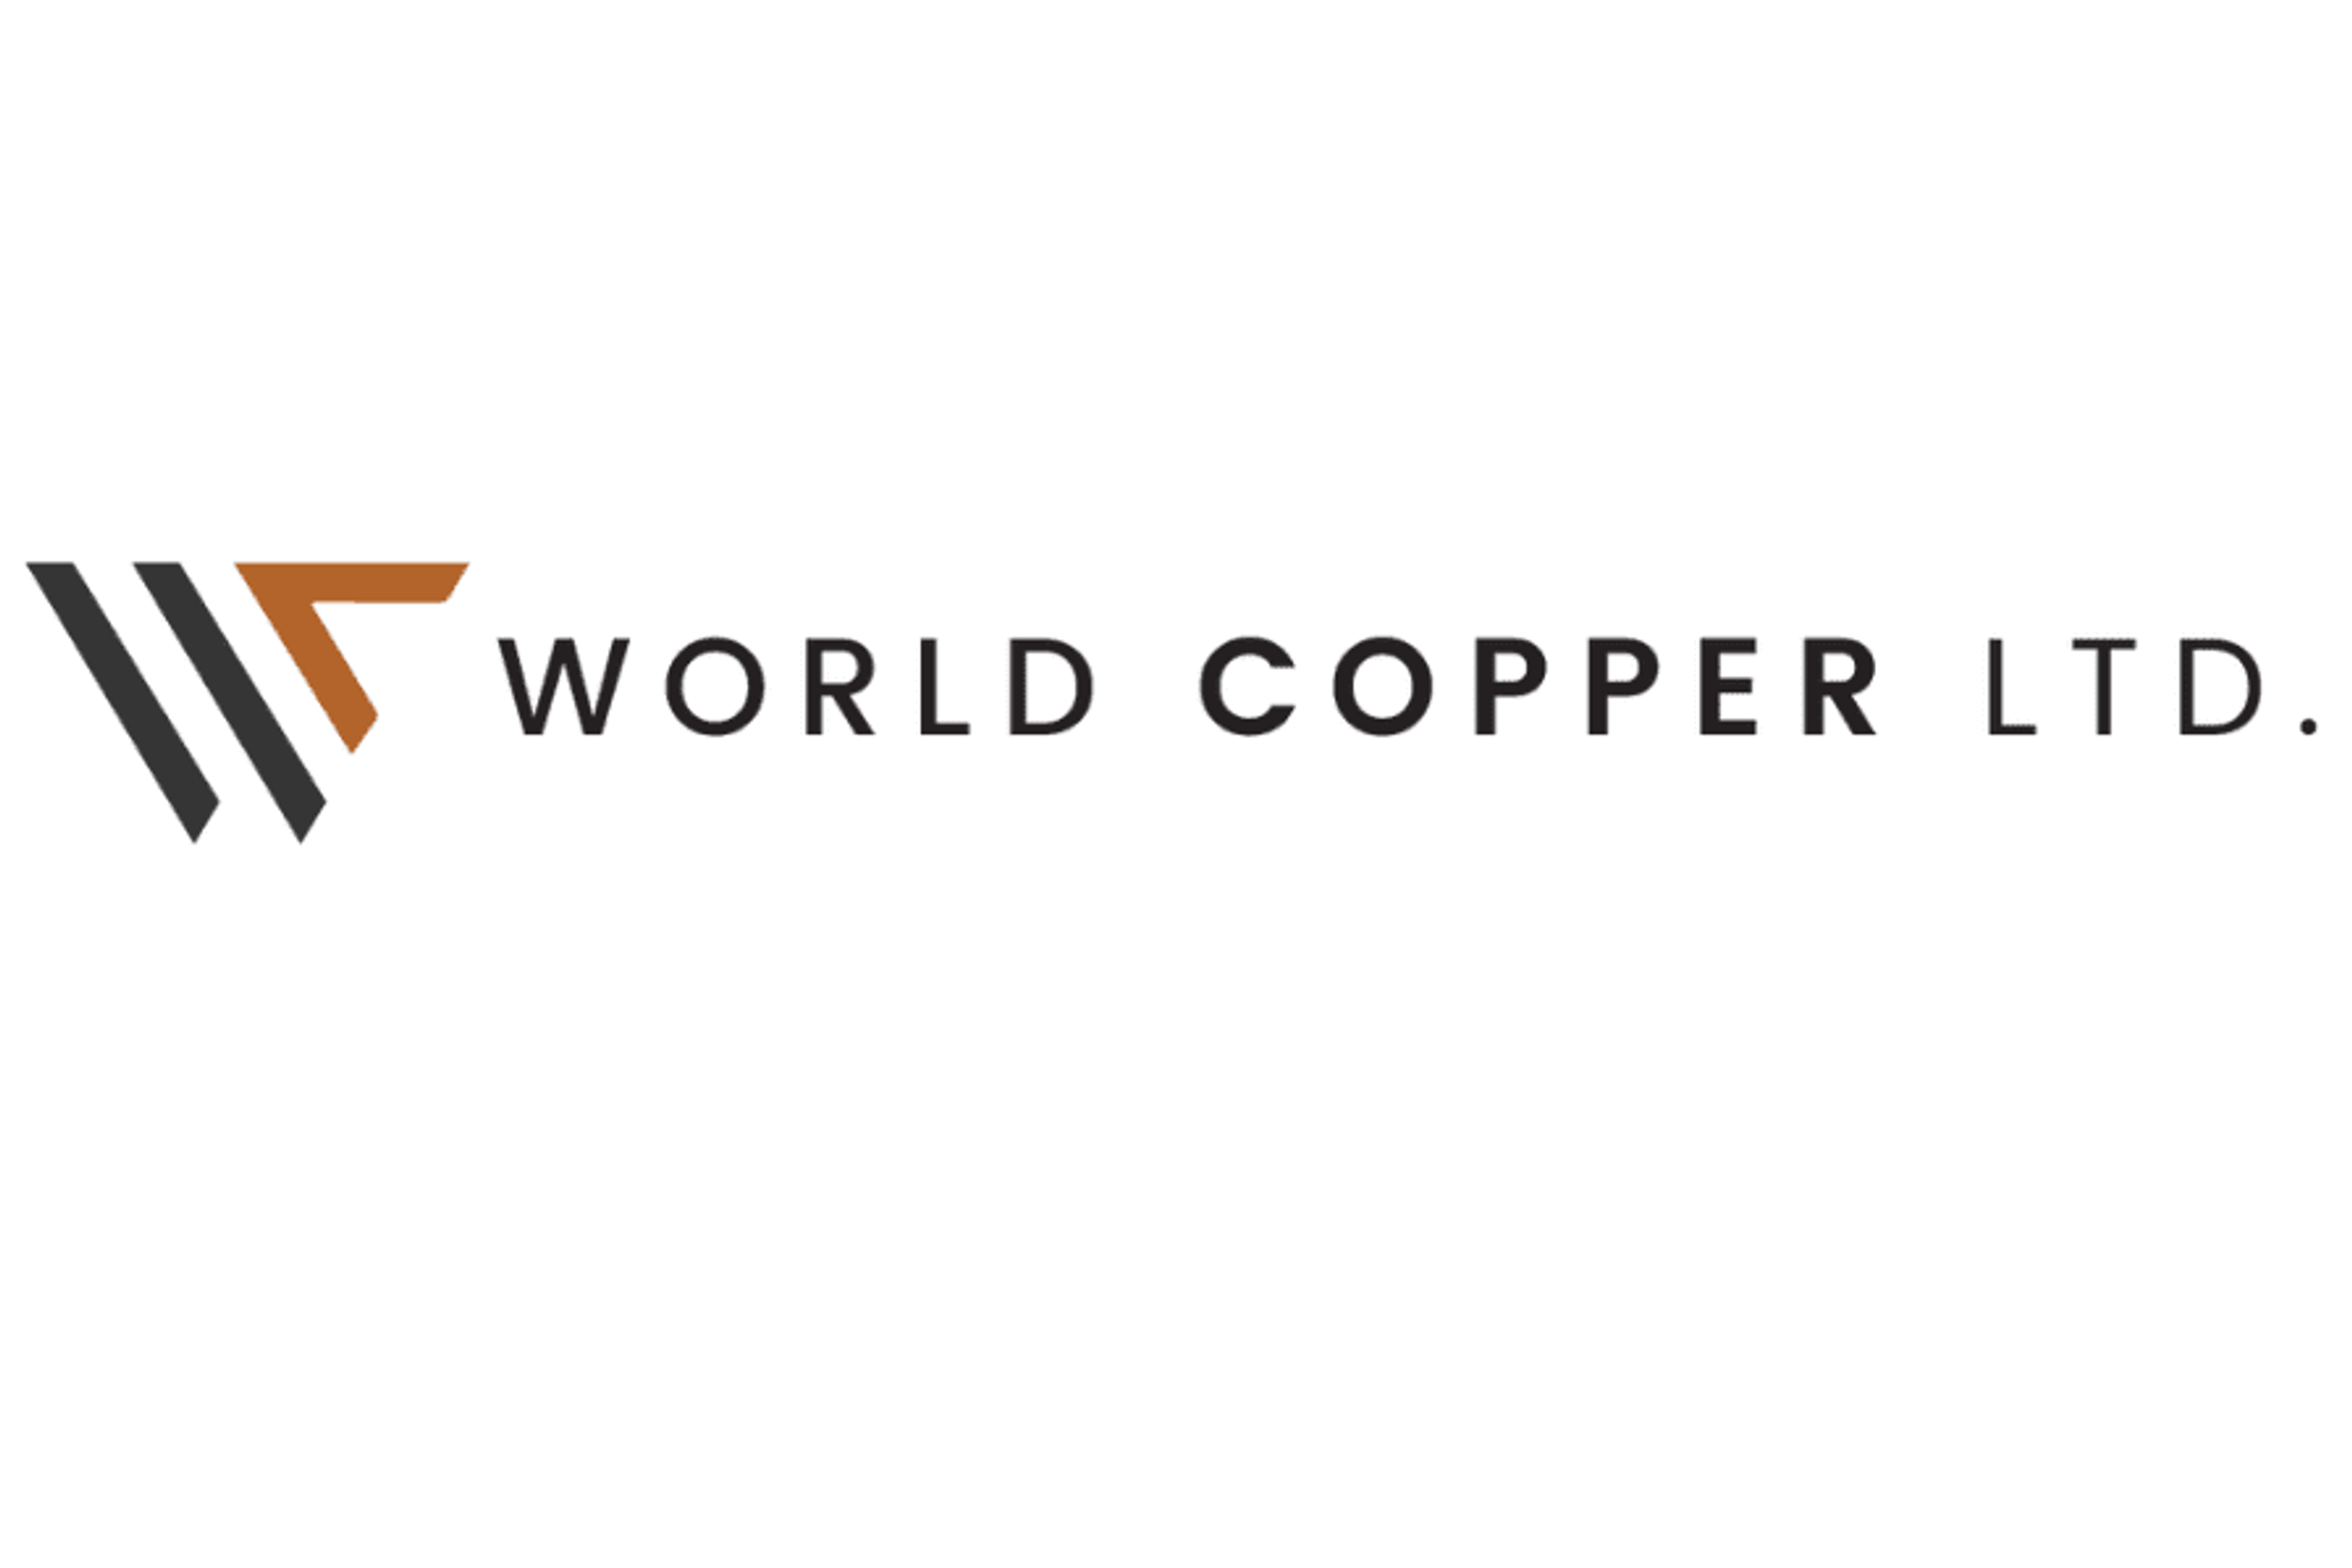 World Copper